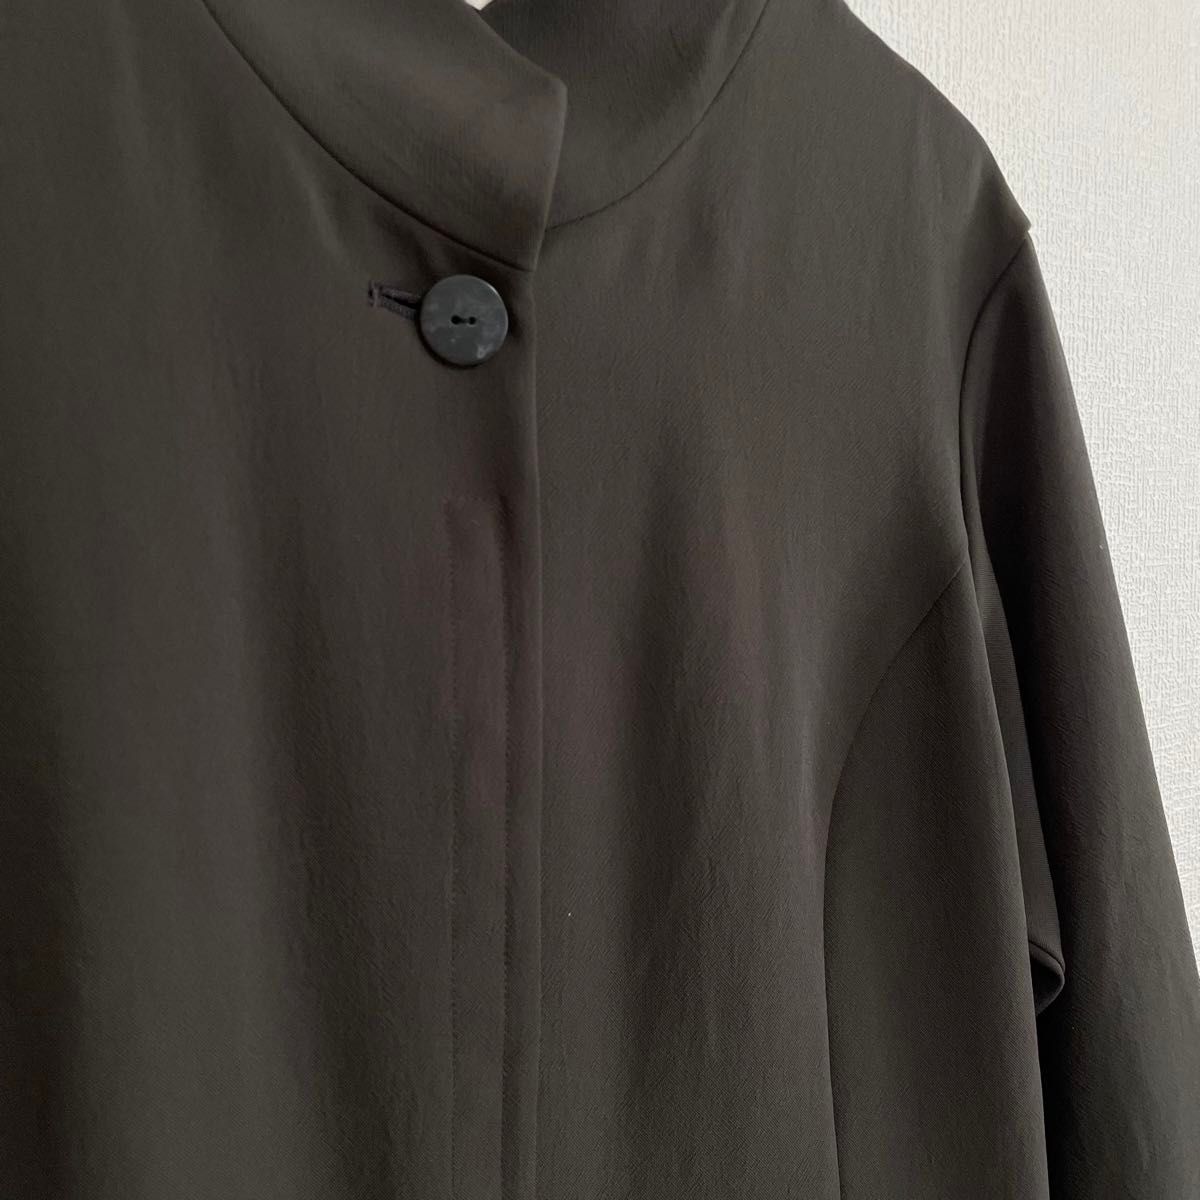 【慈雨】センソユニコ ノーカラージャケット アウター  シャツ ブラウス 日本製 (40) 美品